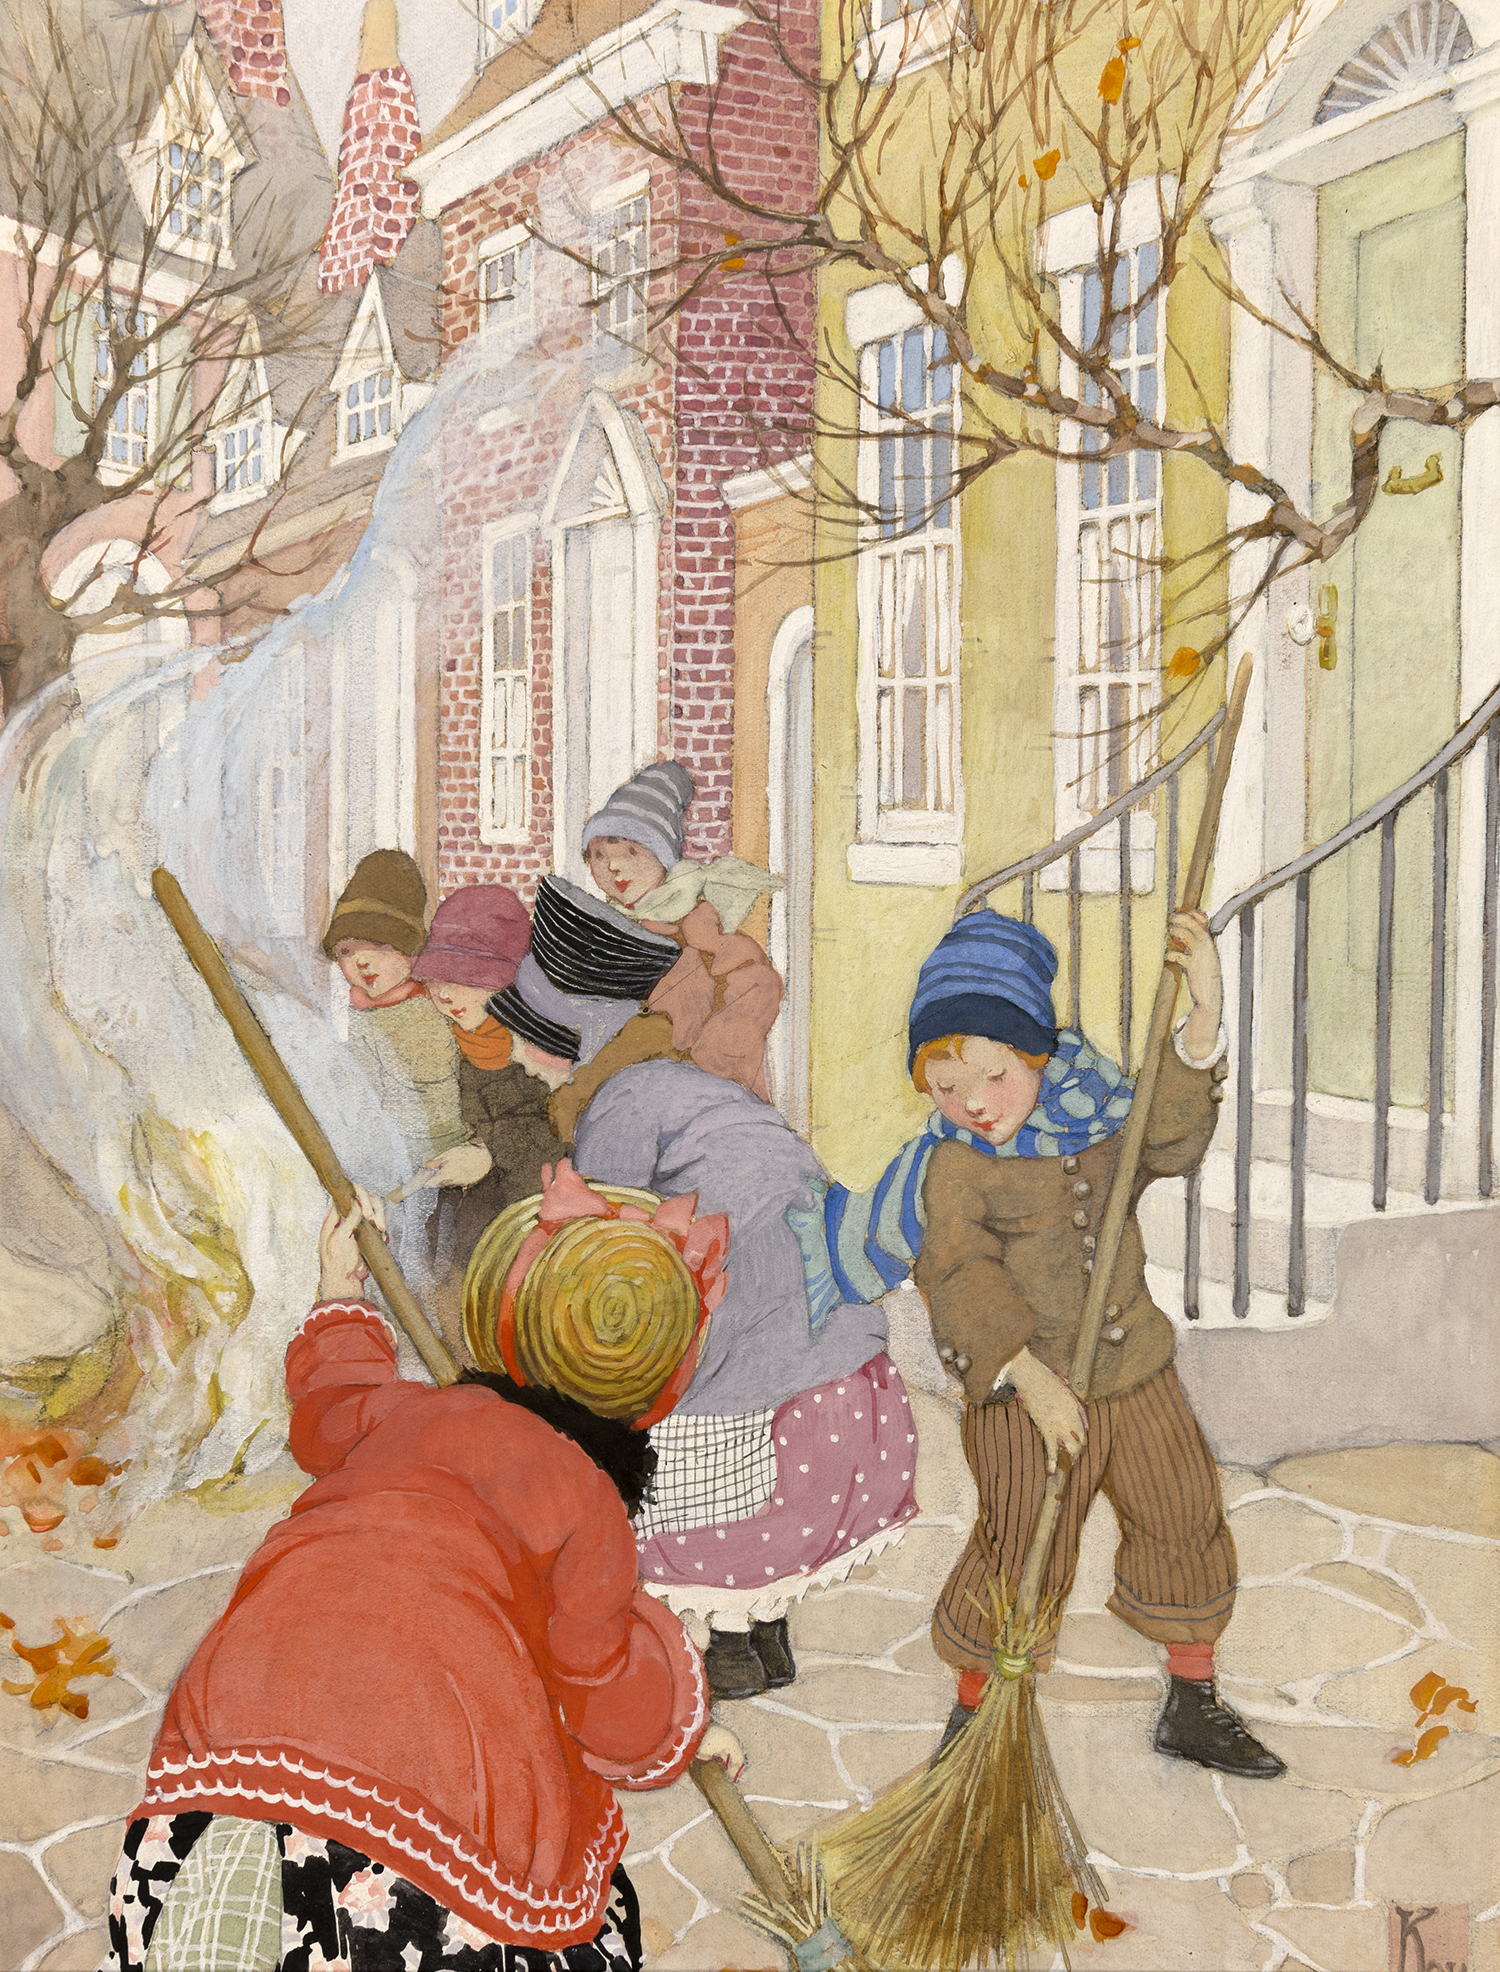 Illustration of children raking leaves on city sidewalk. 